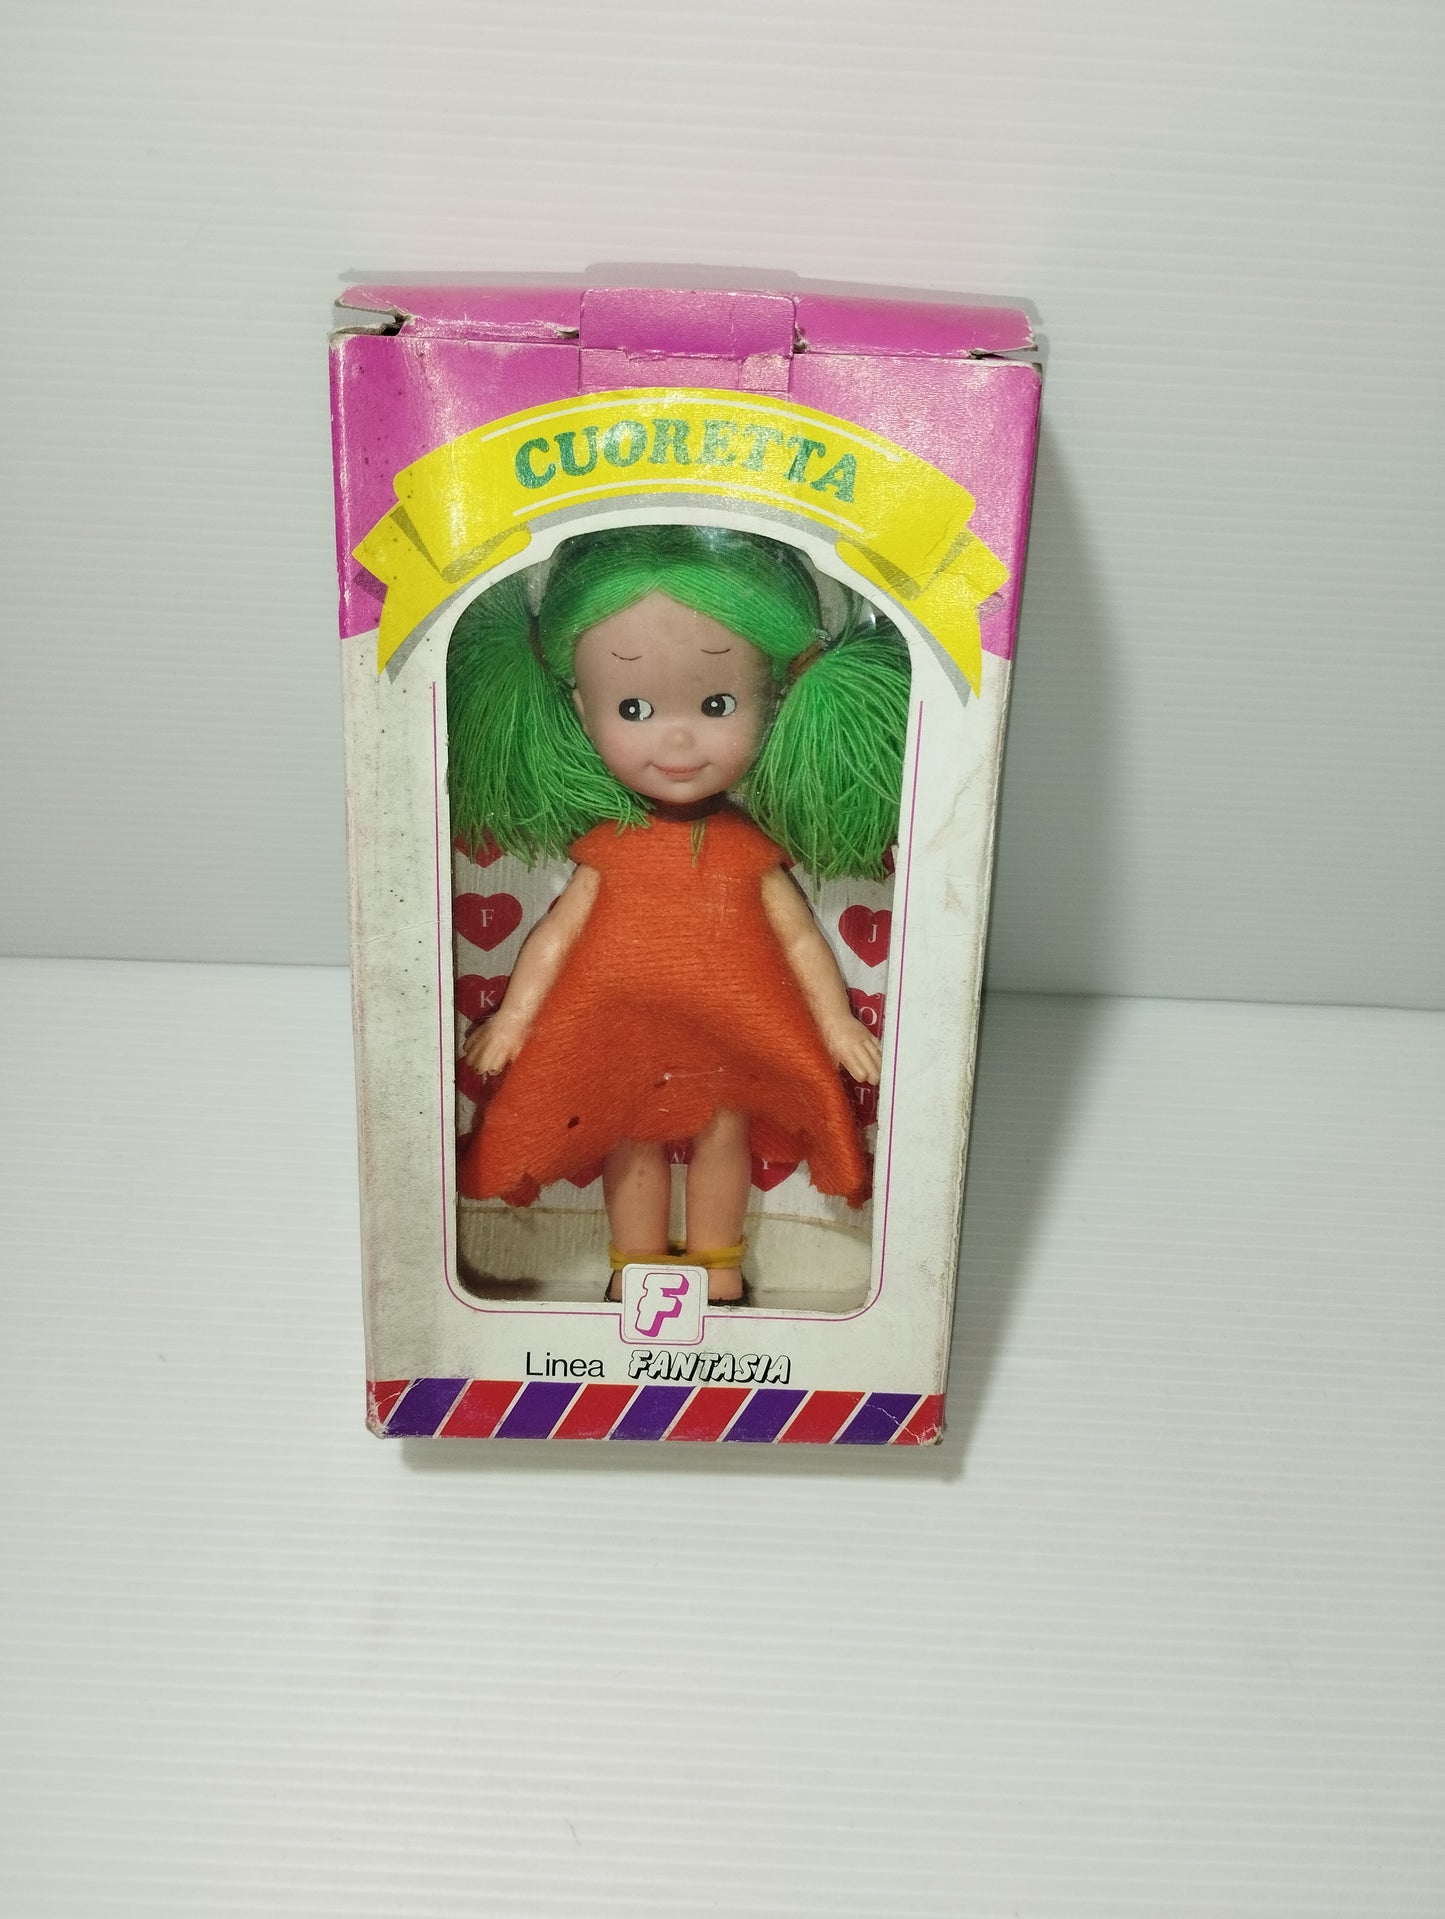 Bambola Cuoretta Linea Fantasia
Anni 80
Altezza bambola 15 cm circa